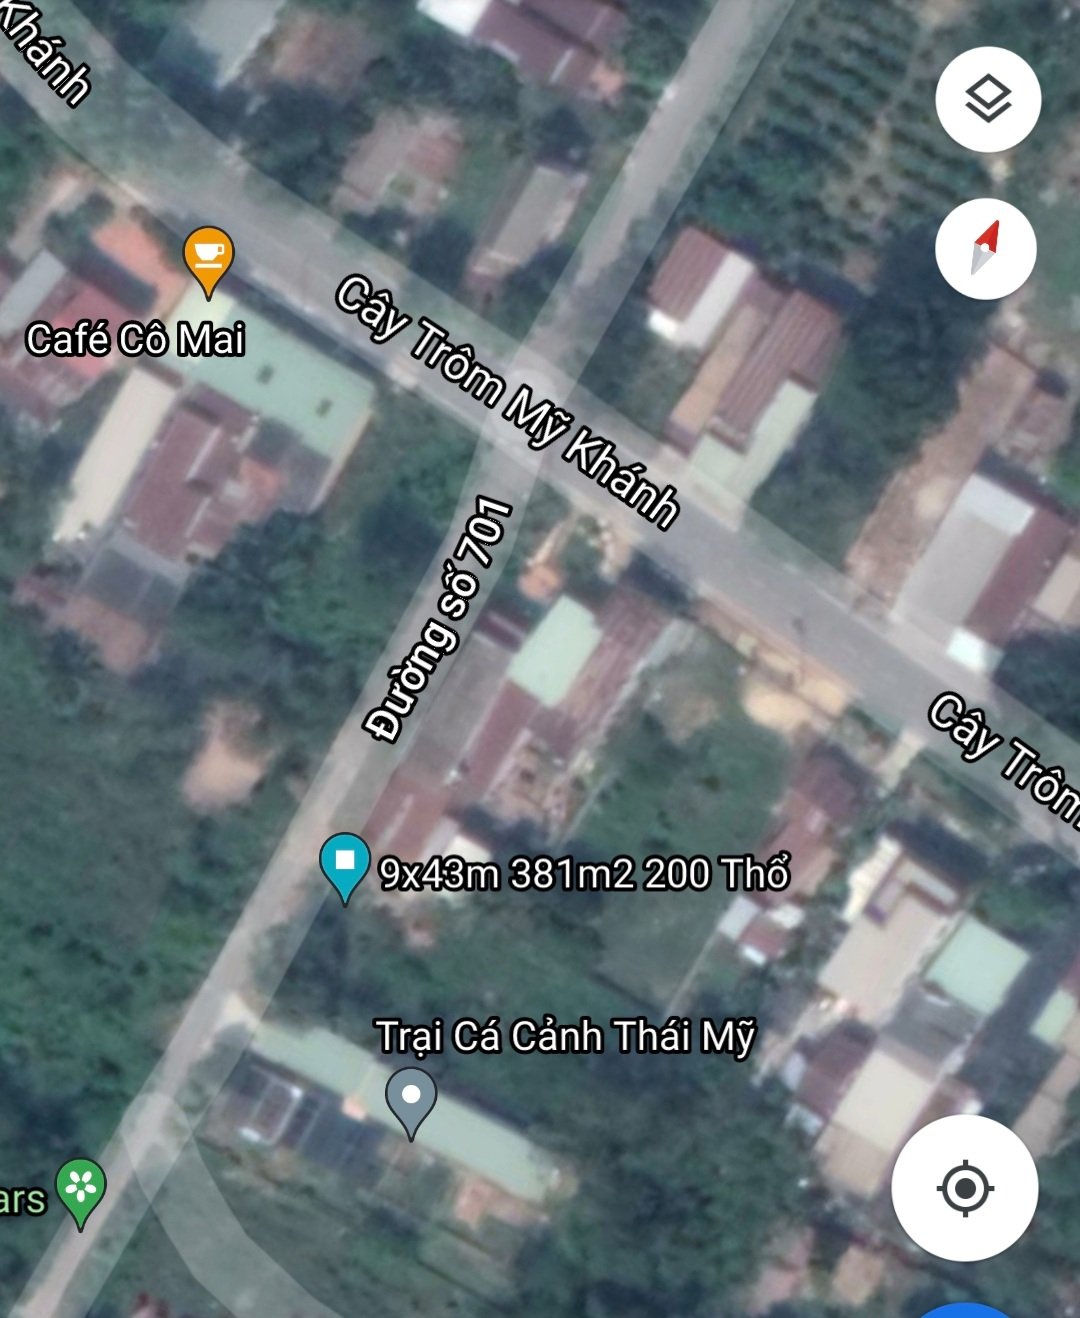 Ảnh nhà đất Đất Củ Chi khu biệt thự nhà vườn xã Thái Mỹ ngay mặt tiền đường nhựa thông 9x43m có 200m2 thổ cư